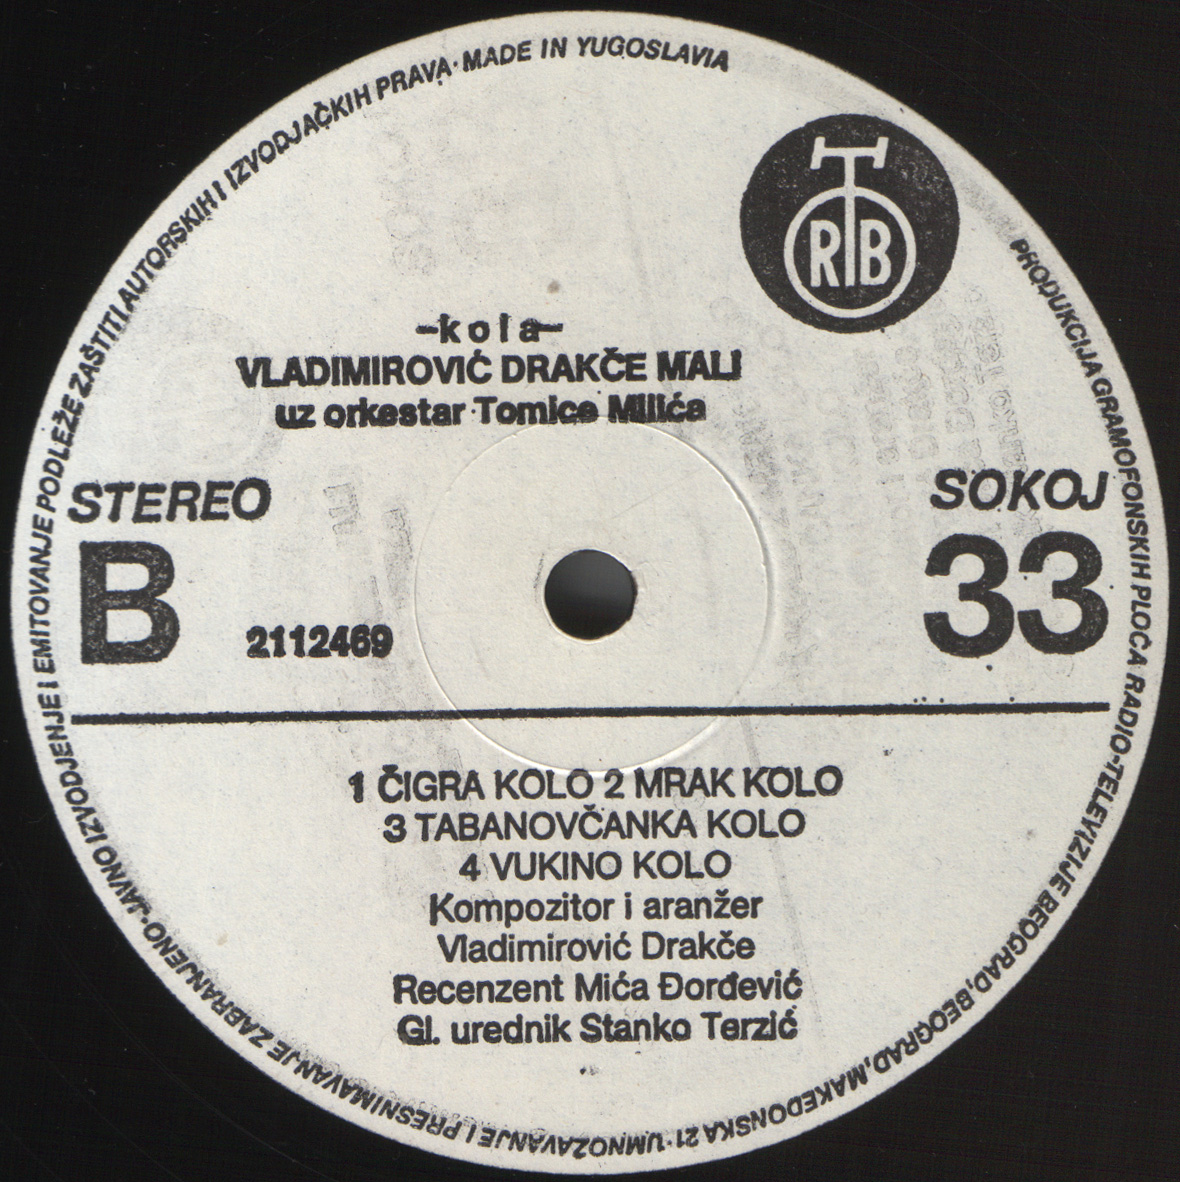 Dragce Vladimirovic Mali 1985 B